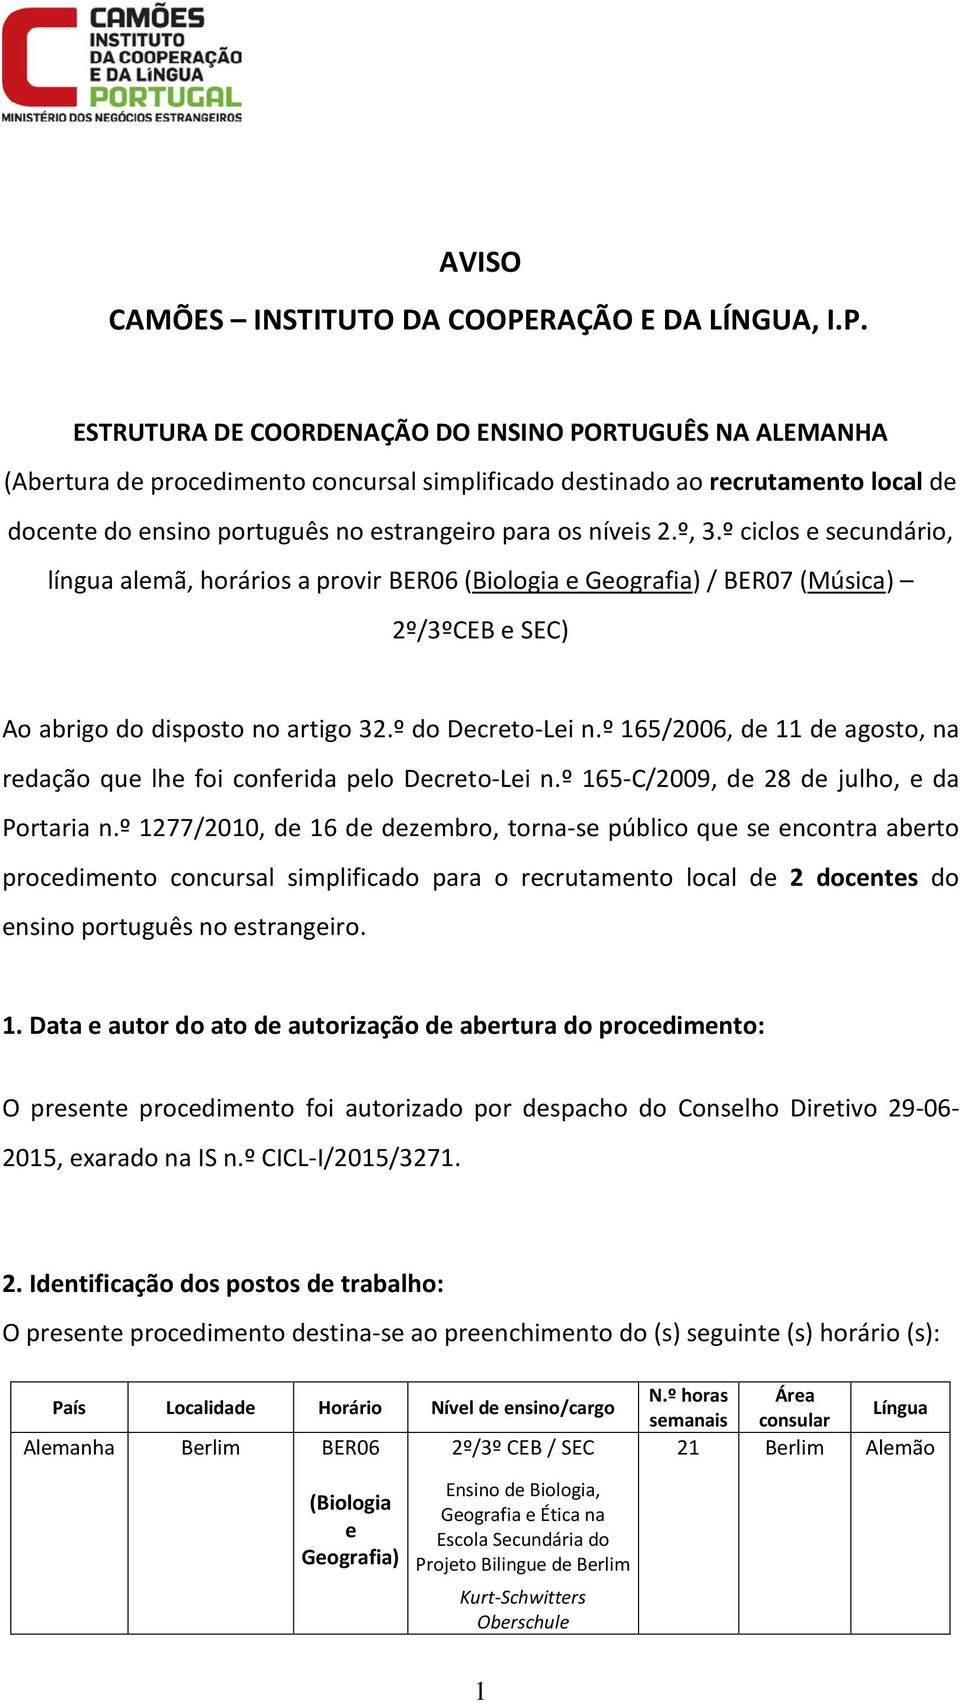 ESTRUTURA DE COORDENAÇÃO DO ENSINO PORTUGUÊS NA ALEMANHA (Abertura de procedimento concursal simplificado destinado ao recrutamento local de docente do ensino português no estrangeiro para os níveis